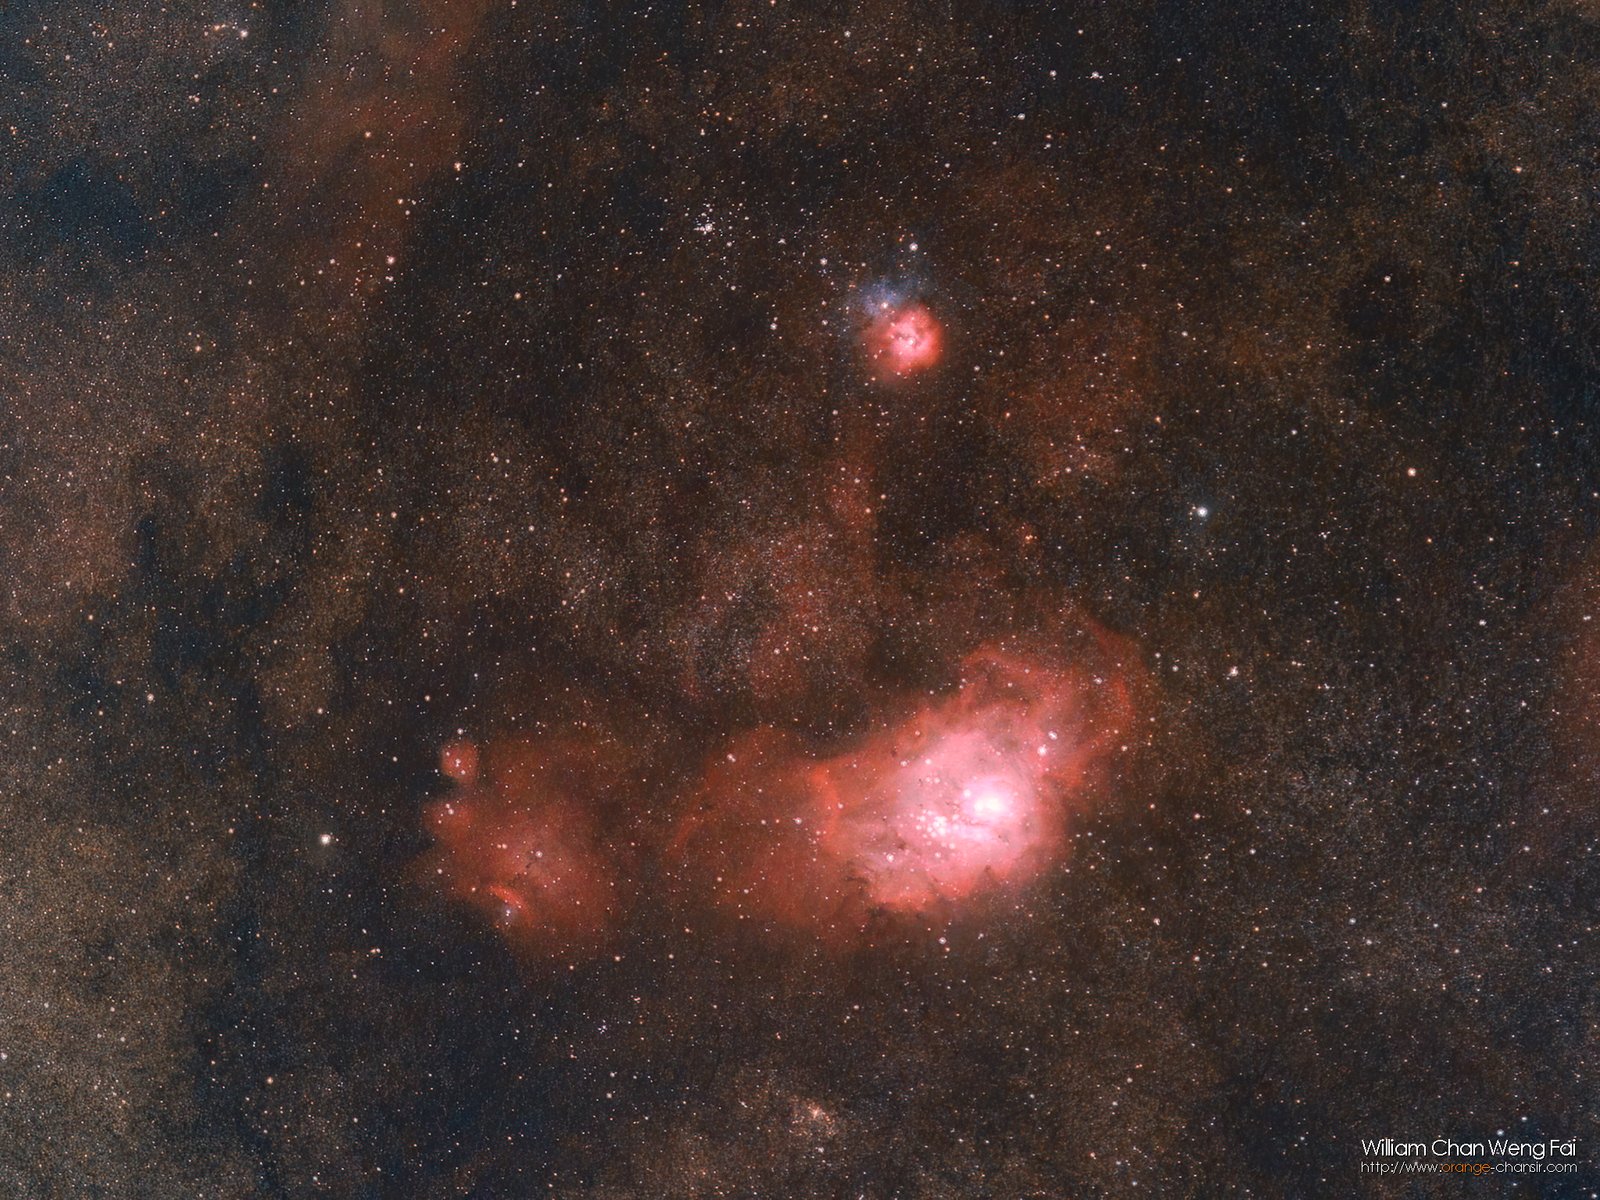 礁湖星雲、三裂星雲（Messier 8 / 20），絕大部分的天體都會發射 SHO 三種頻率，因此我們可以用力度較強的濾鏡去保留這些光線，而放棄其他。